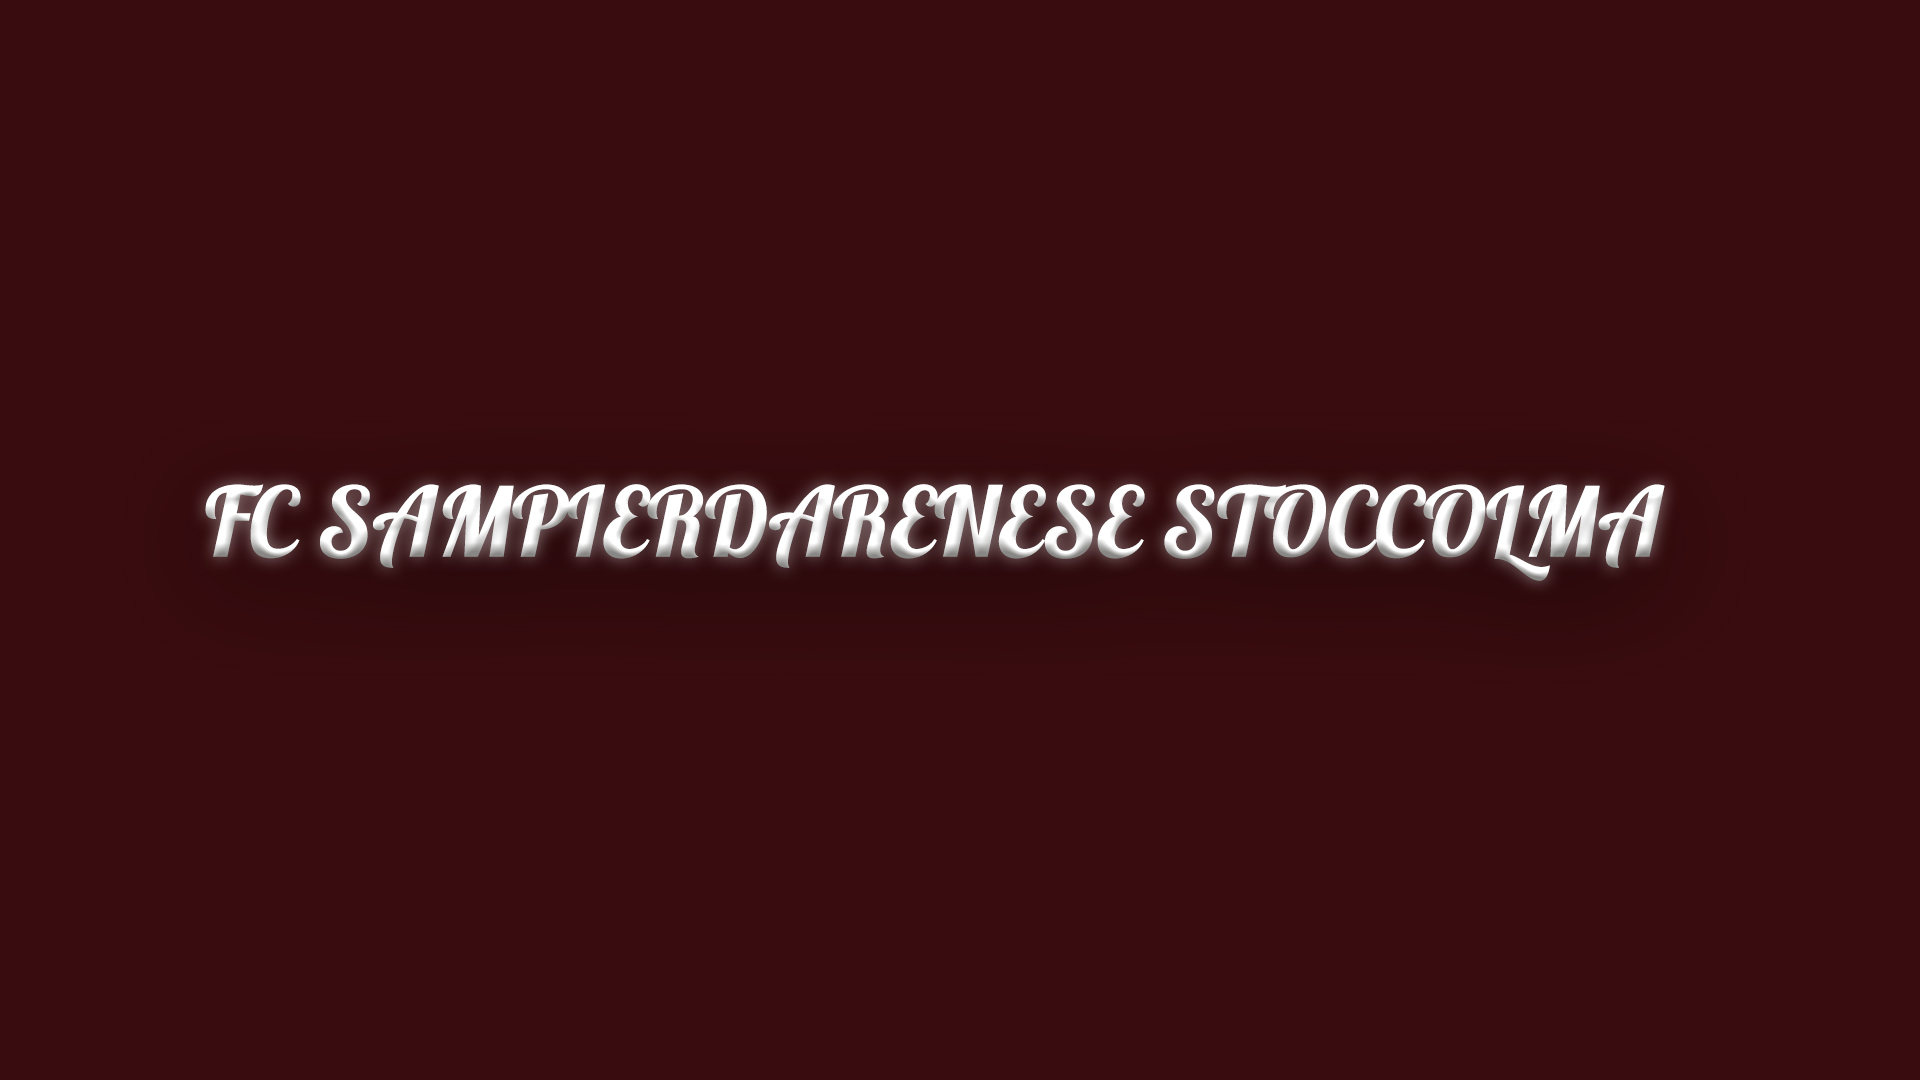 Plattmatch av FC Sampierdarenese